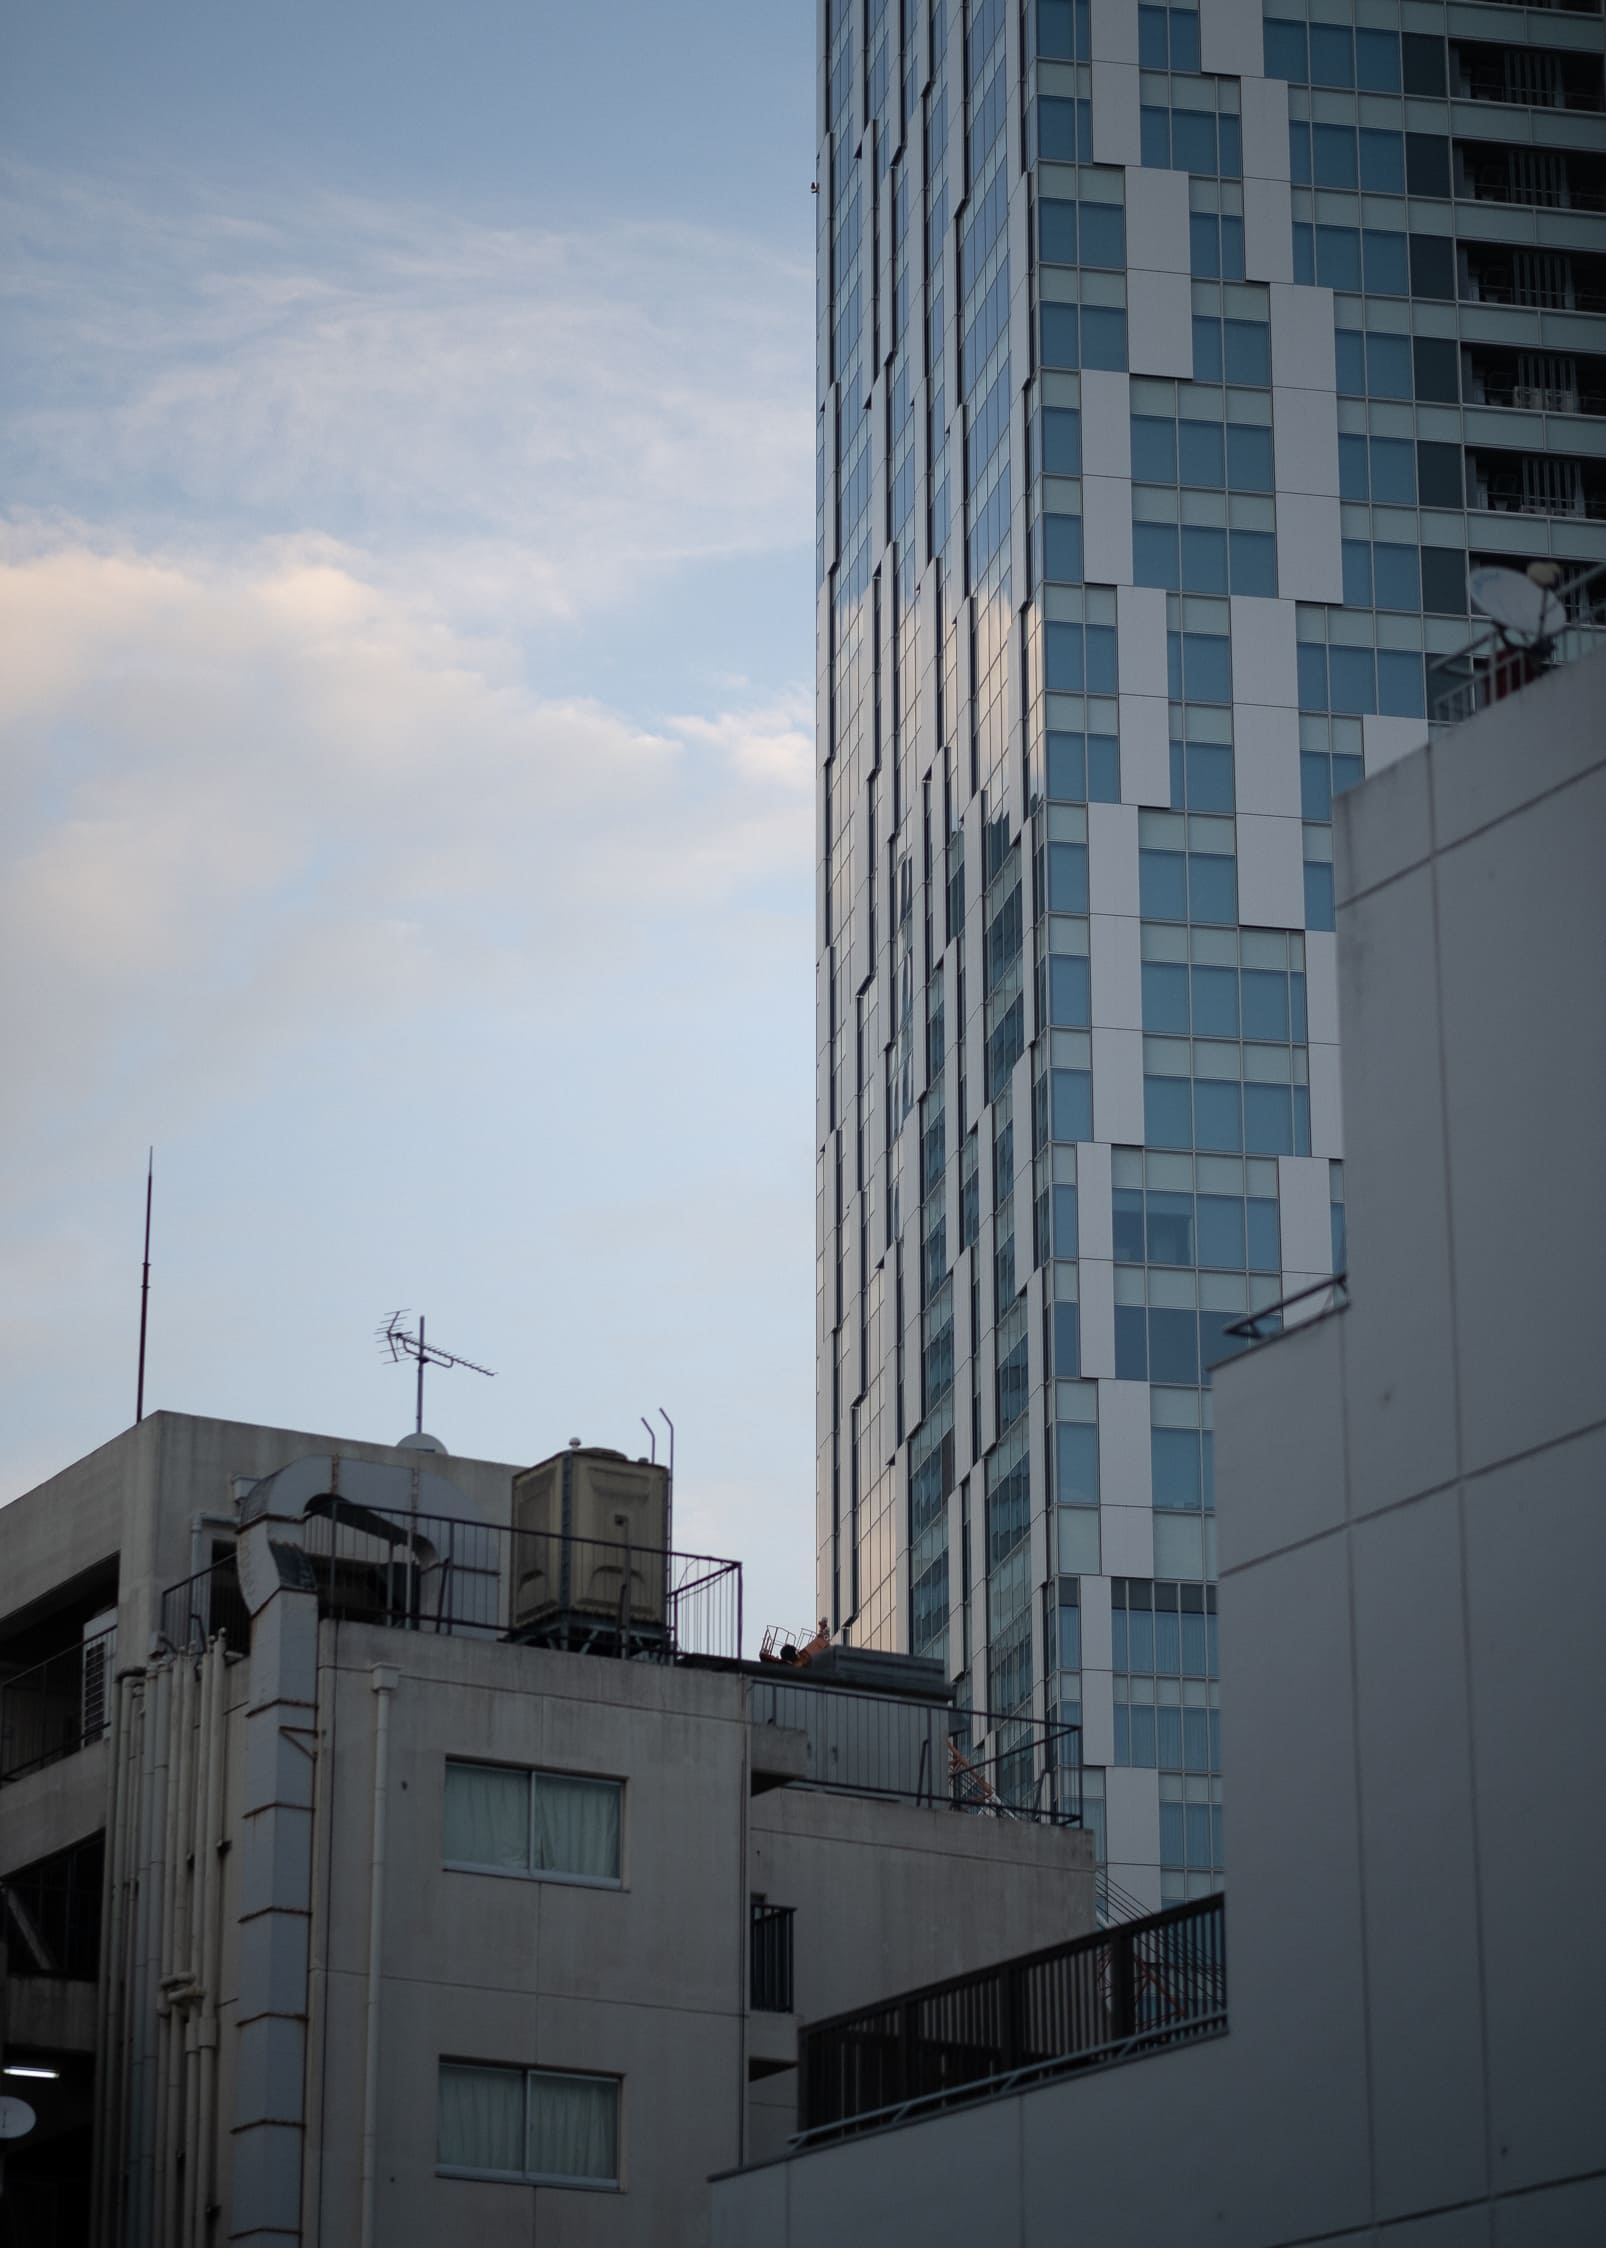 THE 1st SUNDAY SHOP / 窓からの眺め 渋谷のビル群